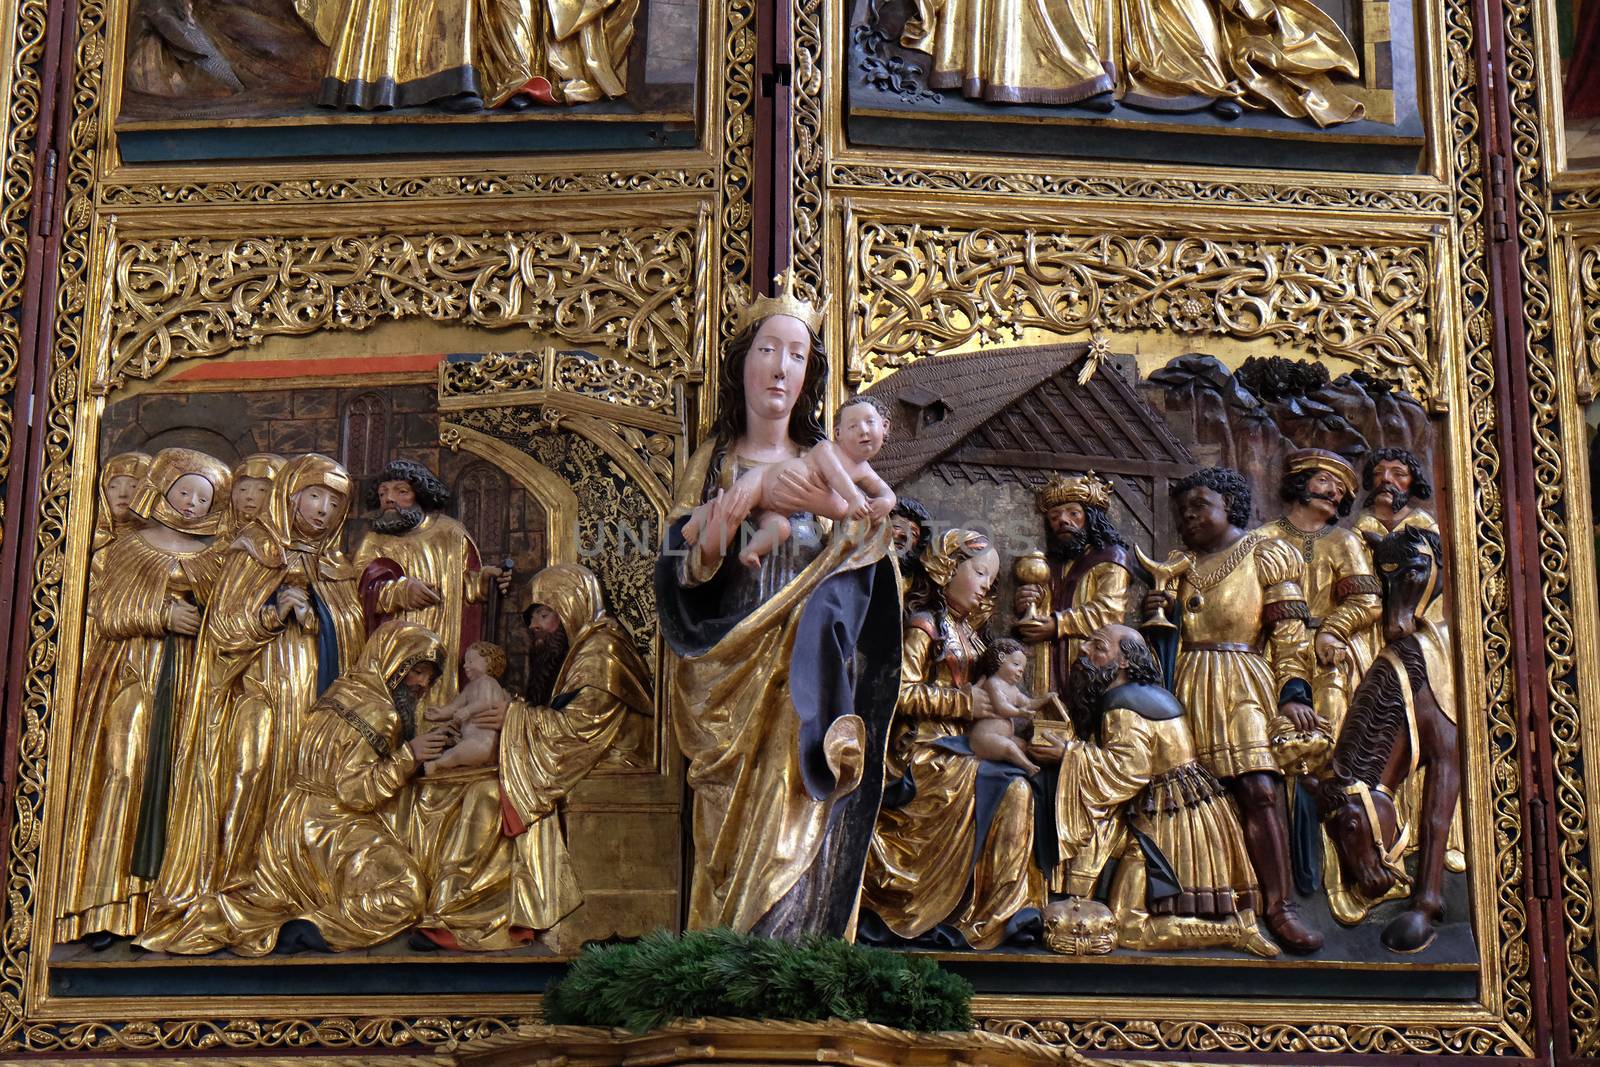 Virgin Mary with baby Jesus, altar in Maria am Berg church on December 13, 2014 in Hallstatt, Austria.